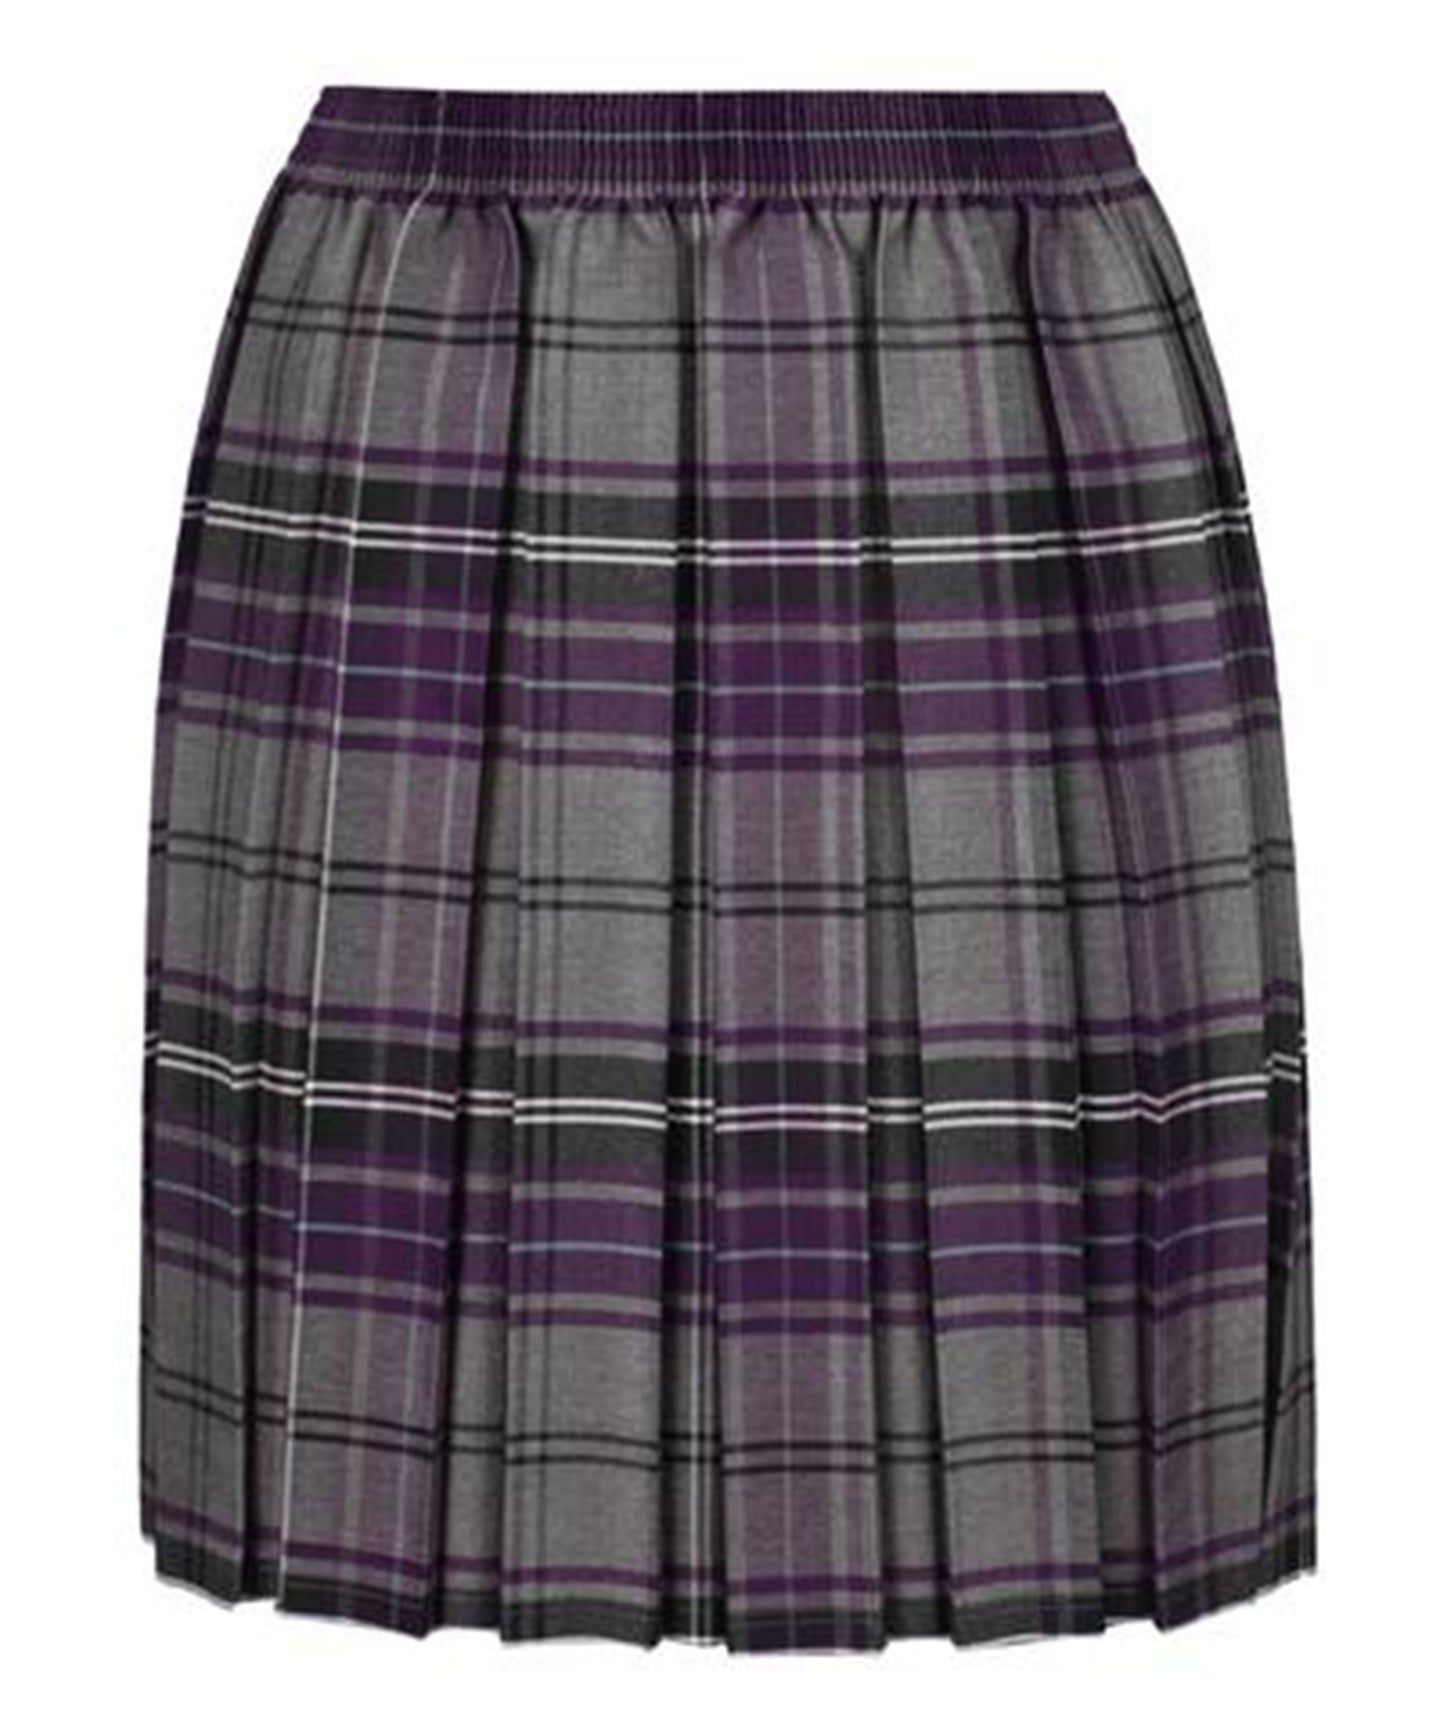 Laneshawbridge Girls Tartan Skirt